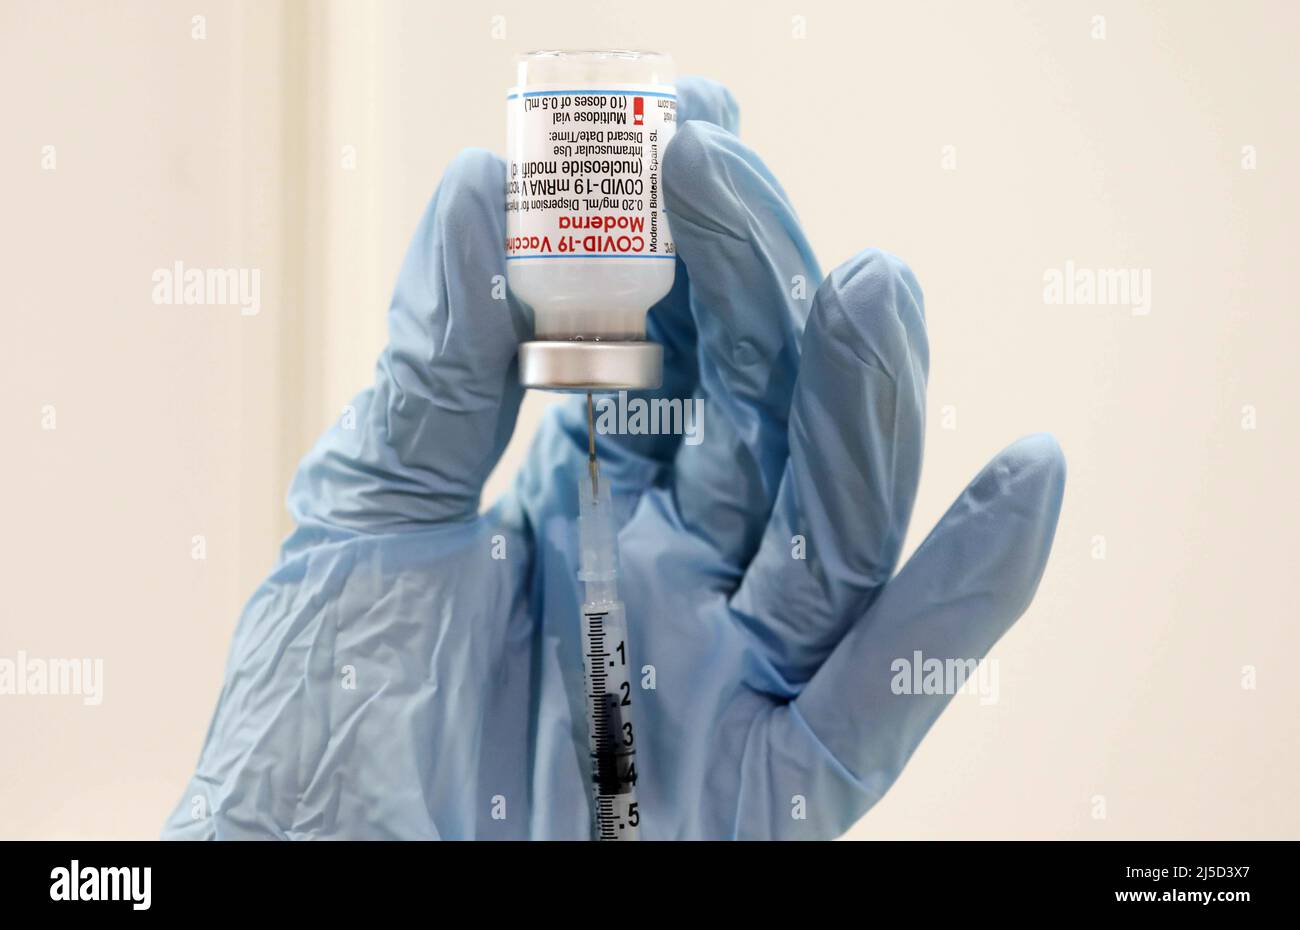 Schoenefeld, 03 décembre 2021 - Une seringue est dressée avec l'ingrédient actif Moderna contre Covid19 dans un centre de vaccination. [traduction automatique] Banque D'Images